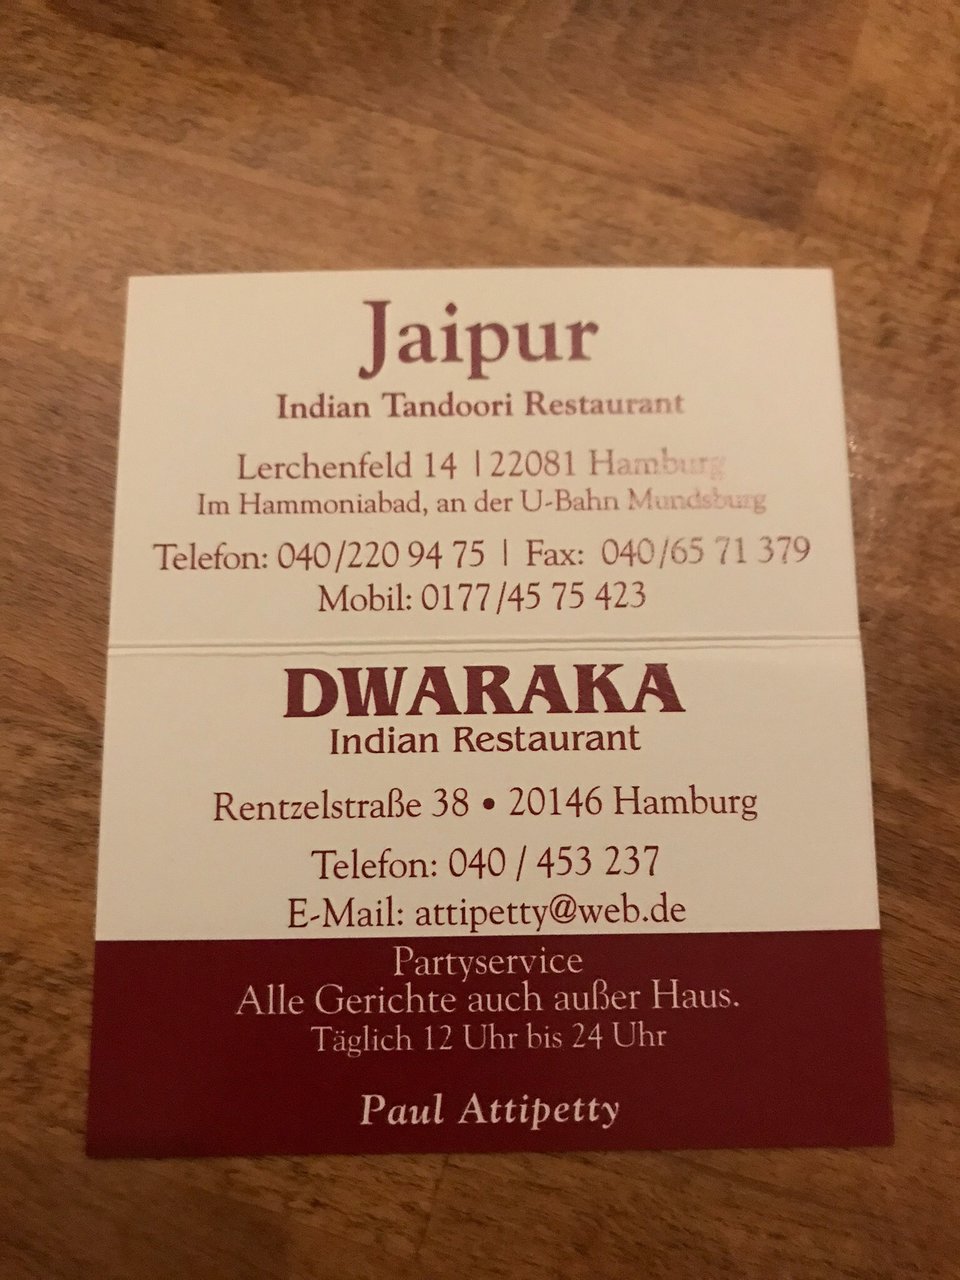 Indian Tandoori Restaurant Jaipur